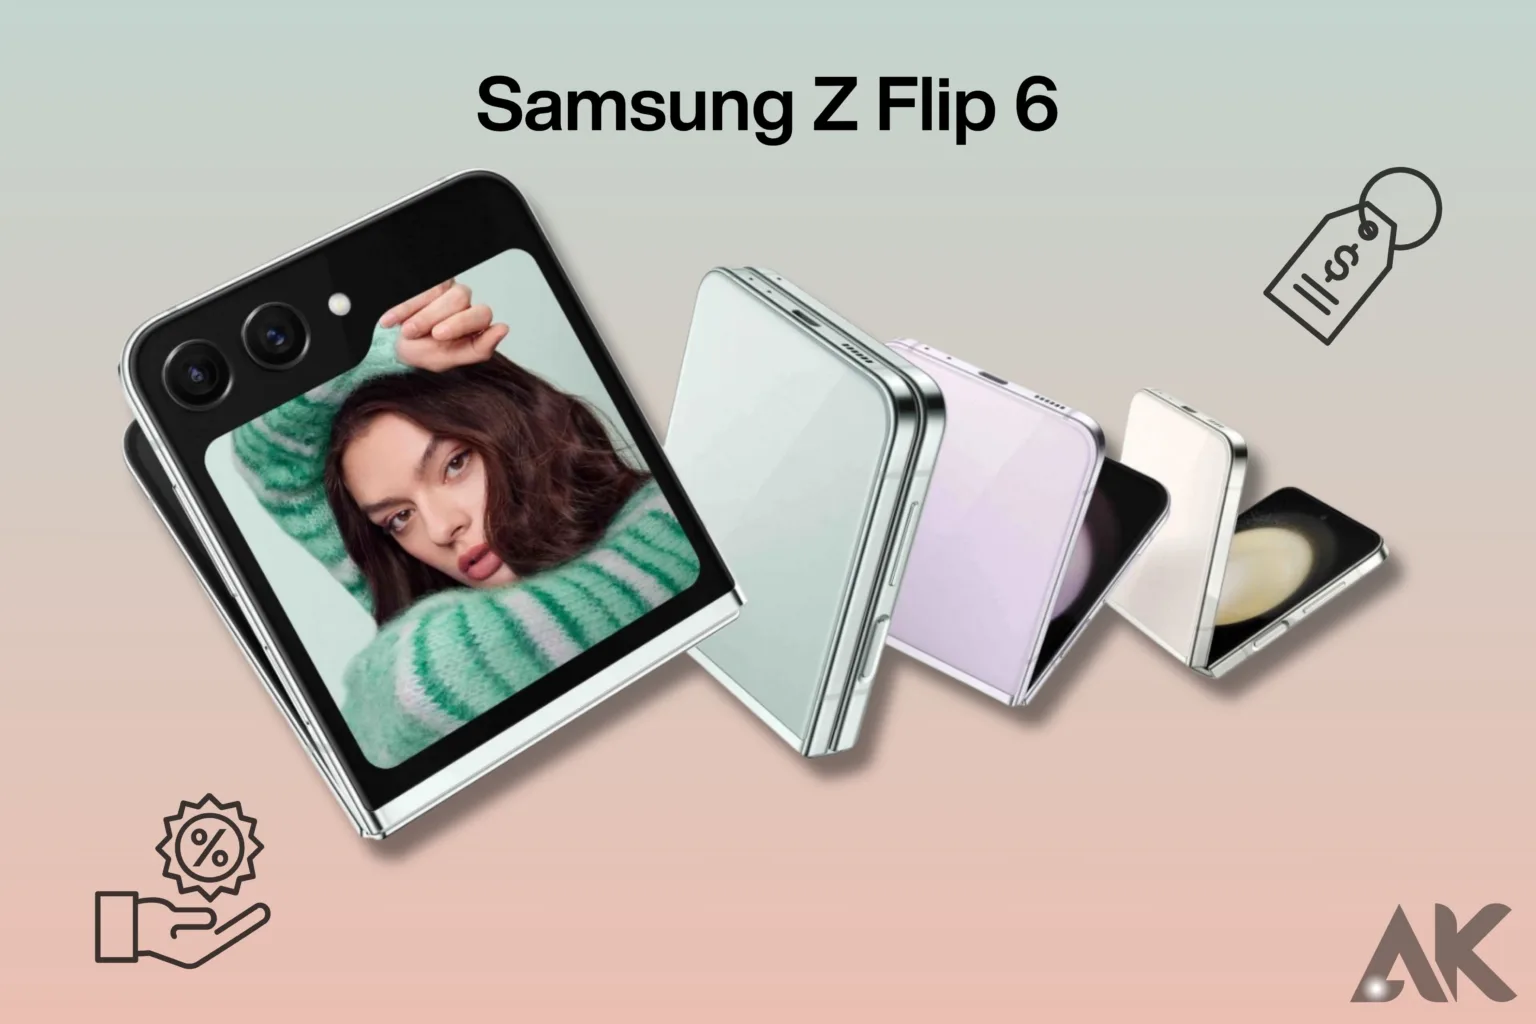 Samsung Z Flip 6 price